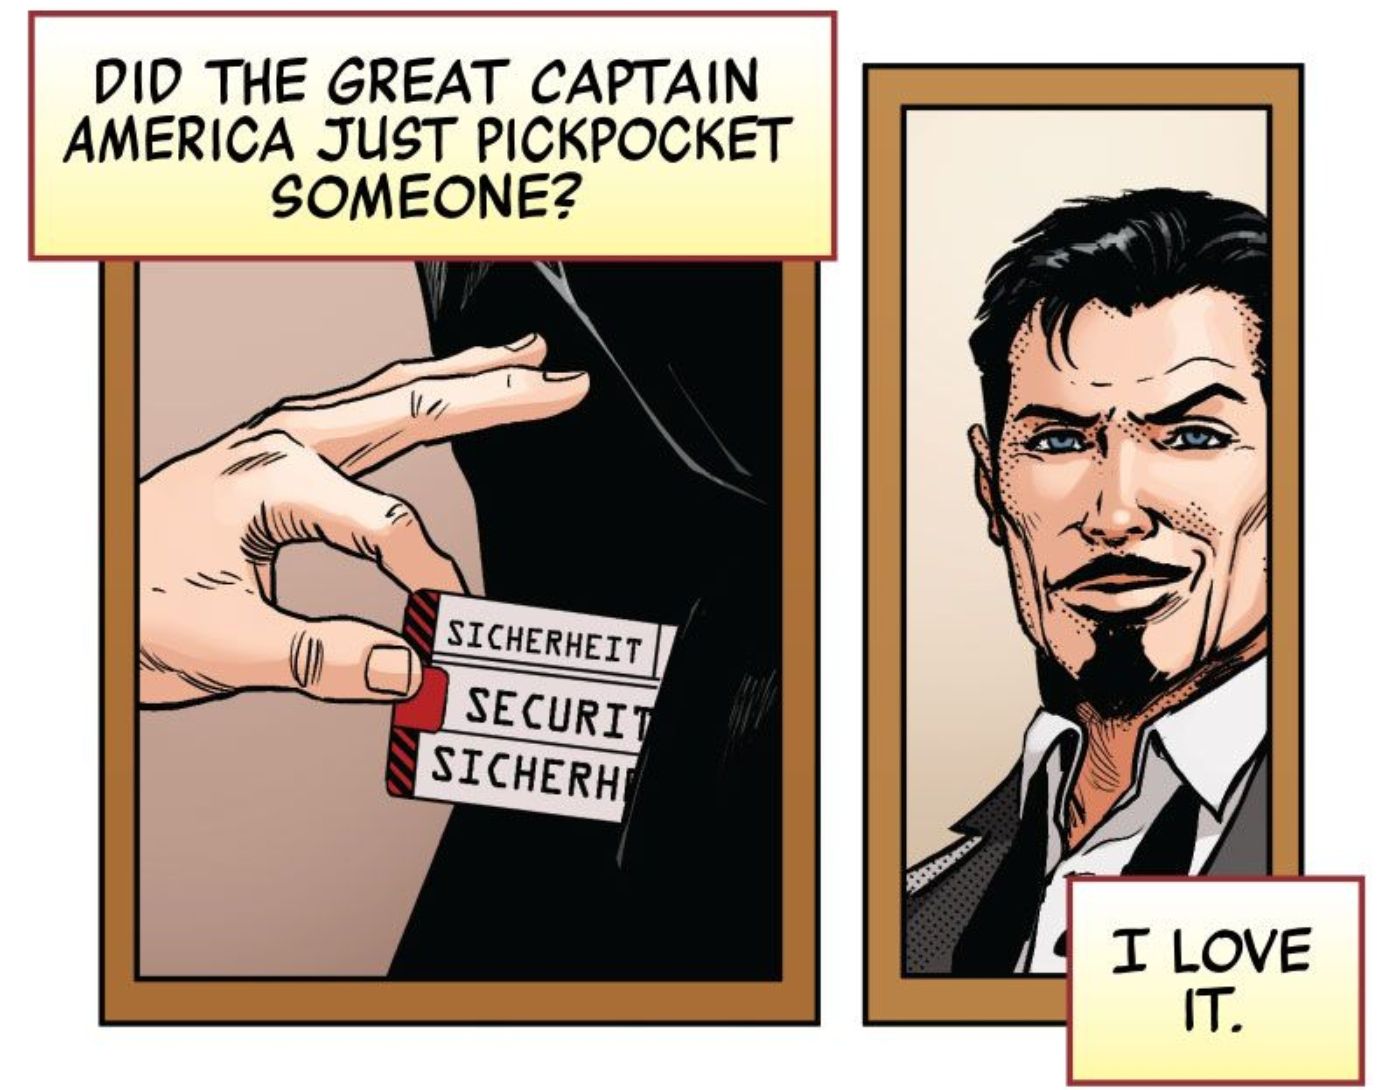 Tony Stark mengawasi Captain America mencopet seseorang untuk mendapatkan informasi.